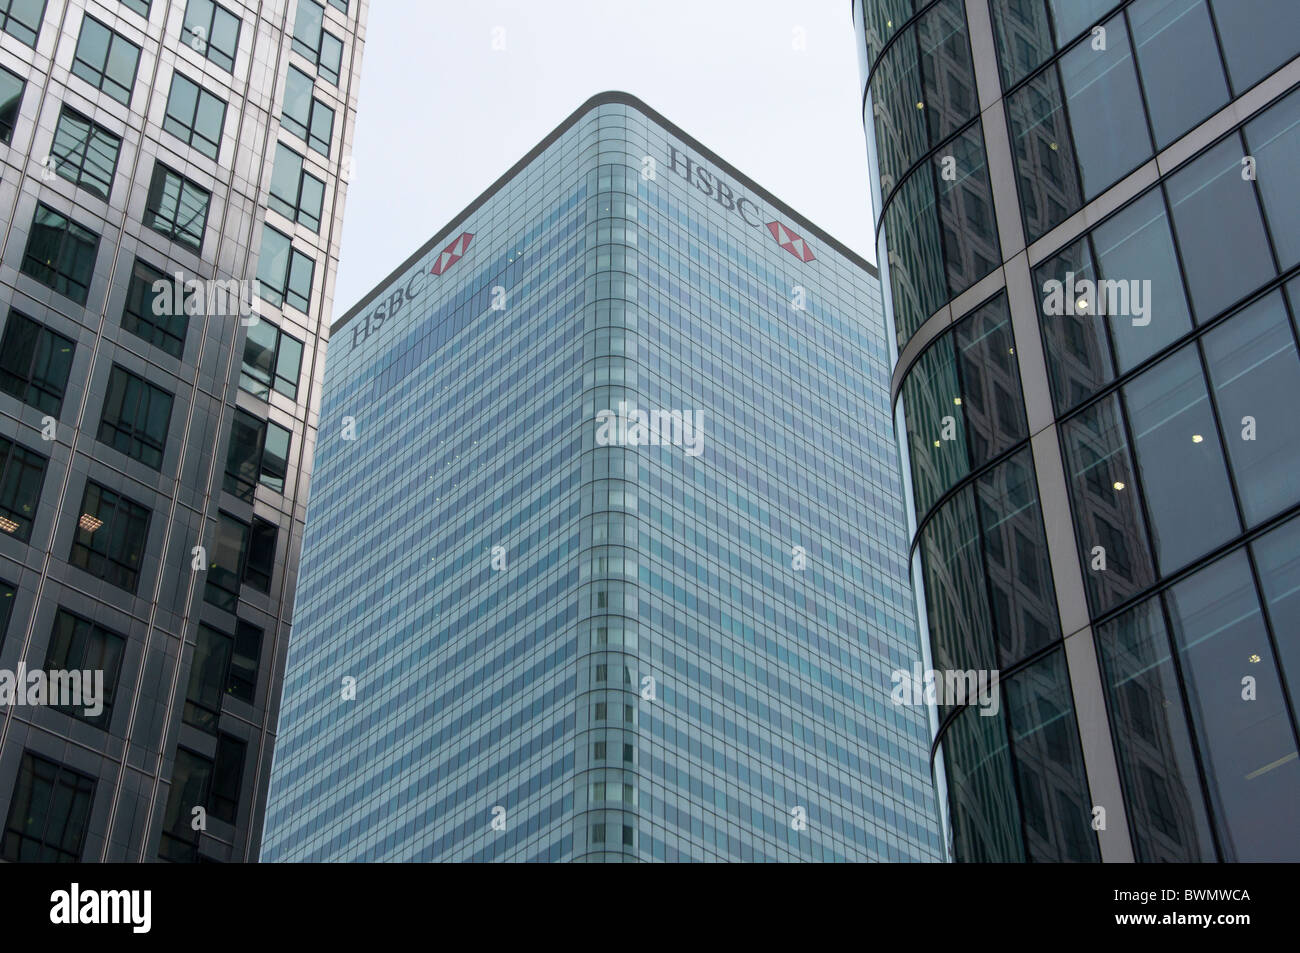 La tour HSBC, Canary Wharf, les Docklands, London, England, UK Banque D'Images